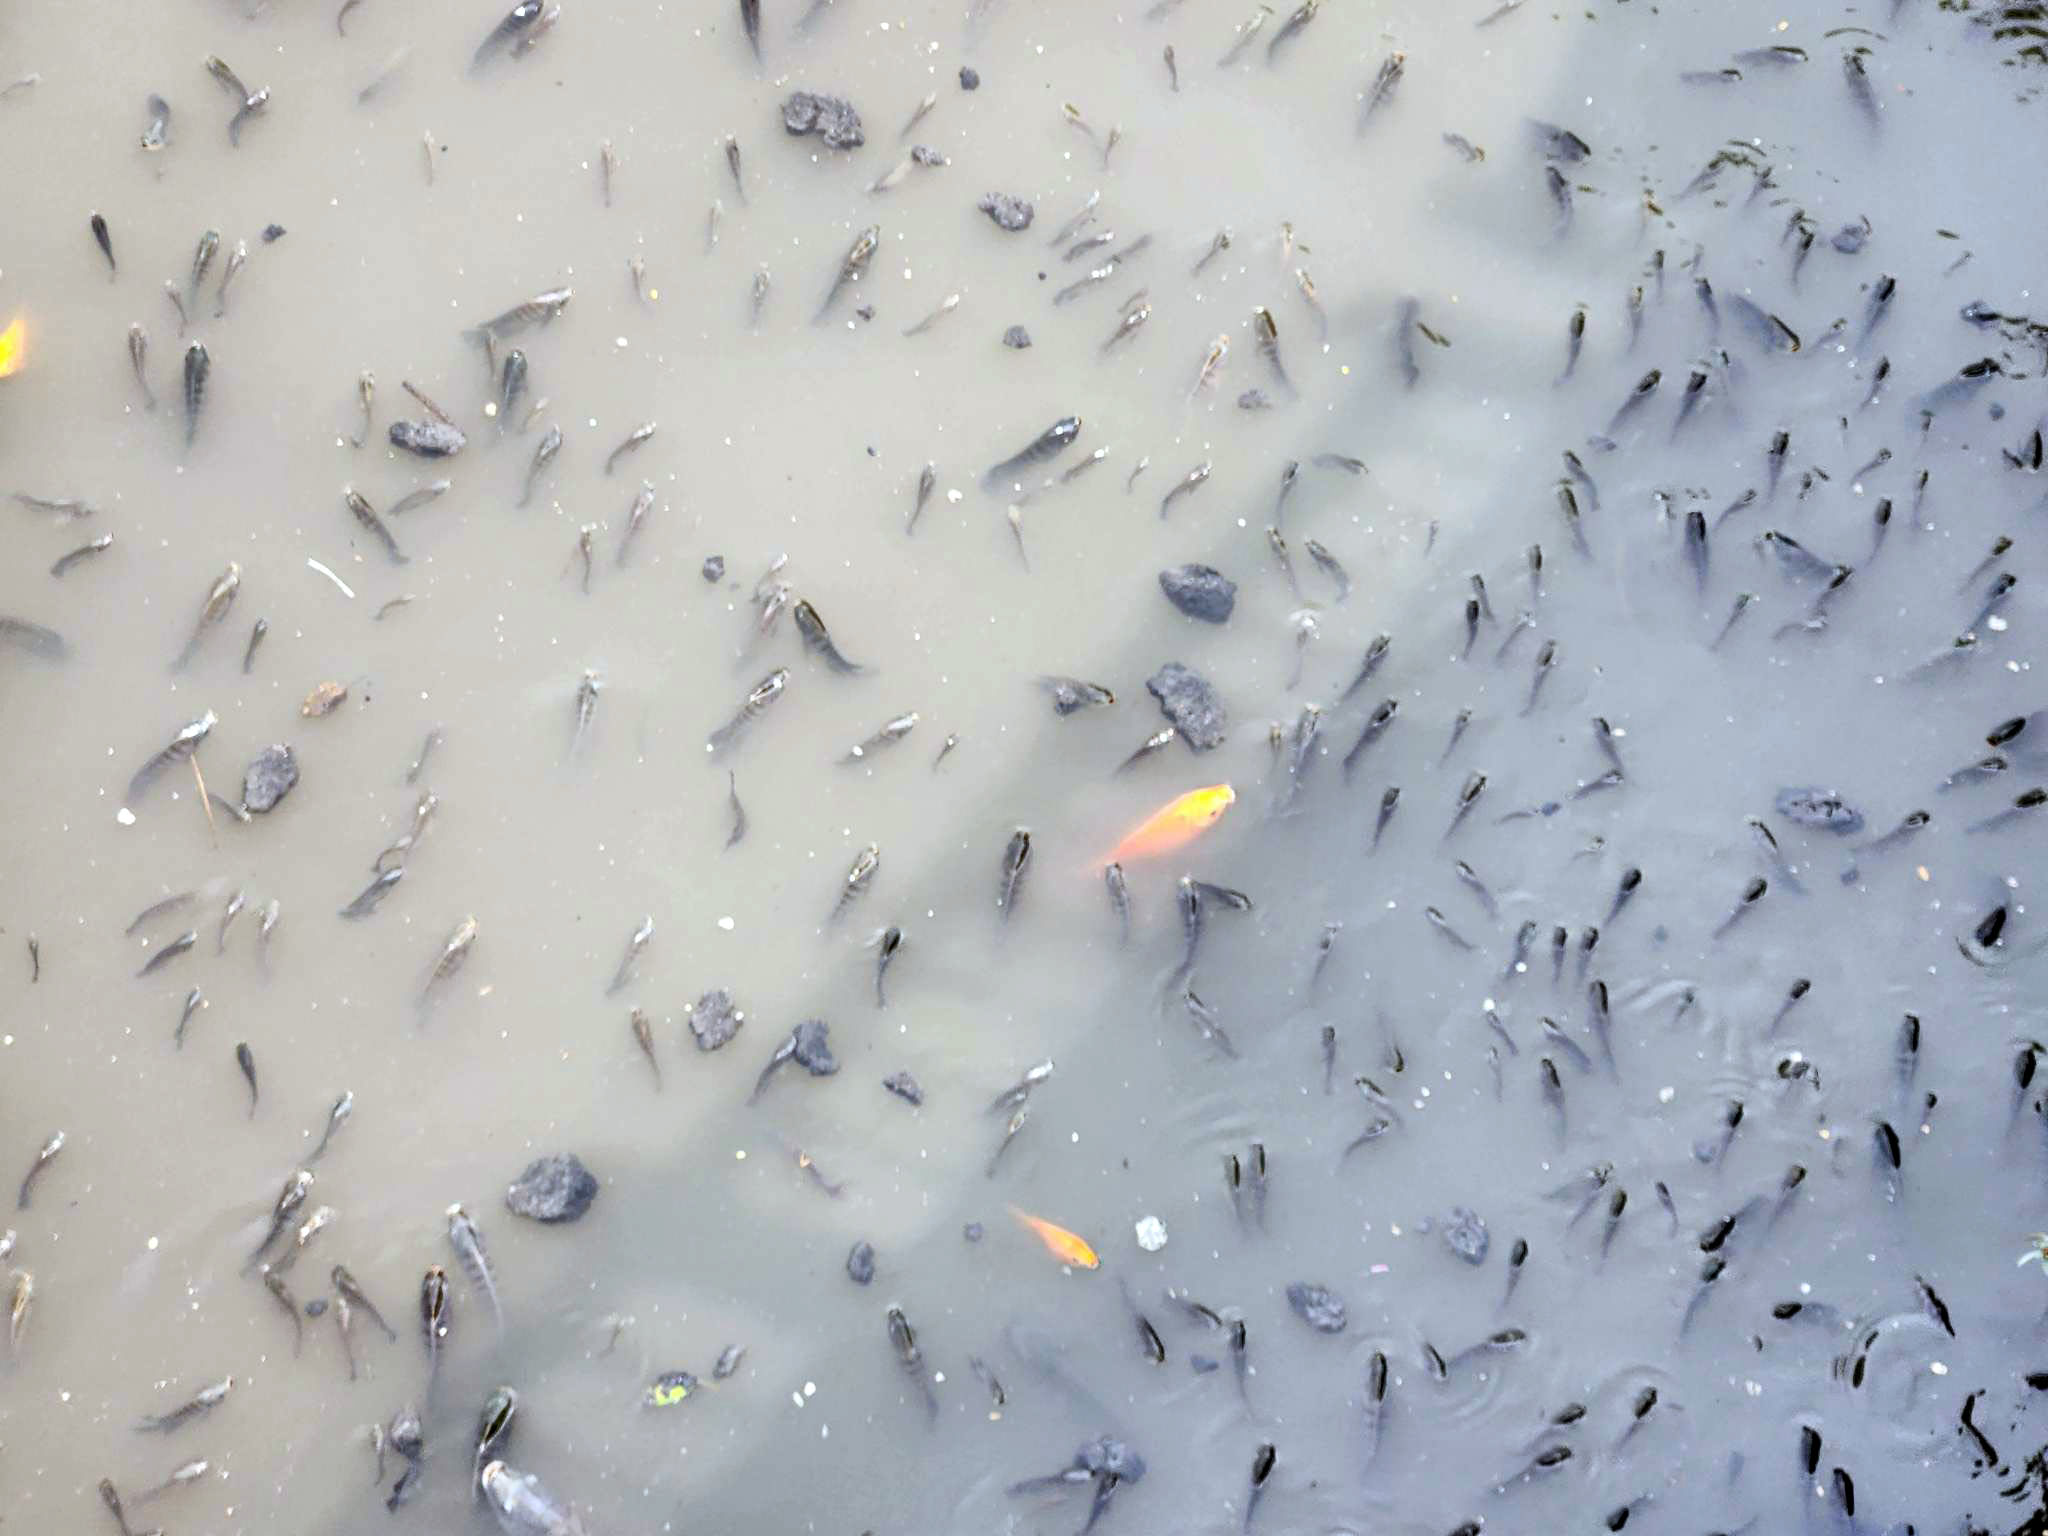 Sau trận mưa lớn vào tối qua, sáng và trưa nay 16/5, cá nổi dày đặc trên kênh Nhiêu Lộc – Thị Nghè